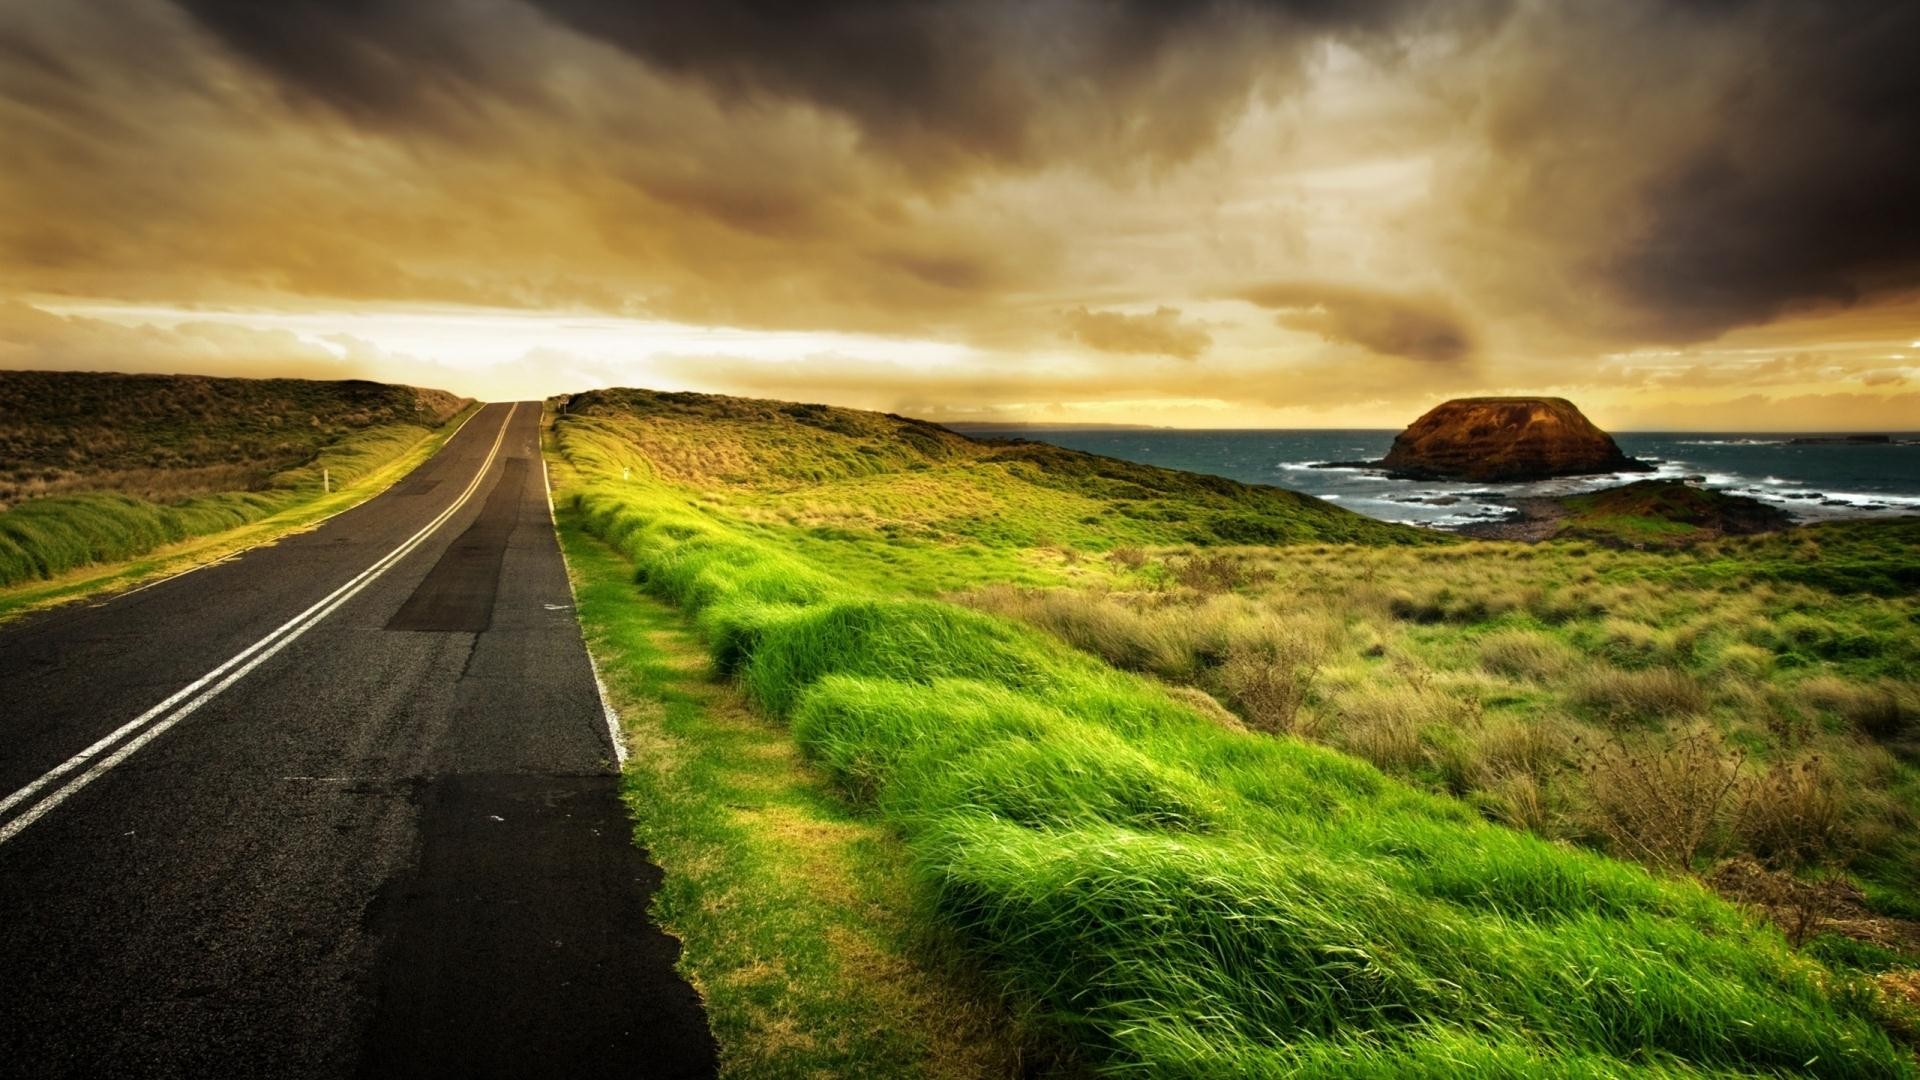 clouds, landscapes, horizon, roads, HDR photography - desktop wallpaper